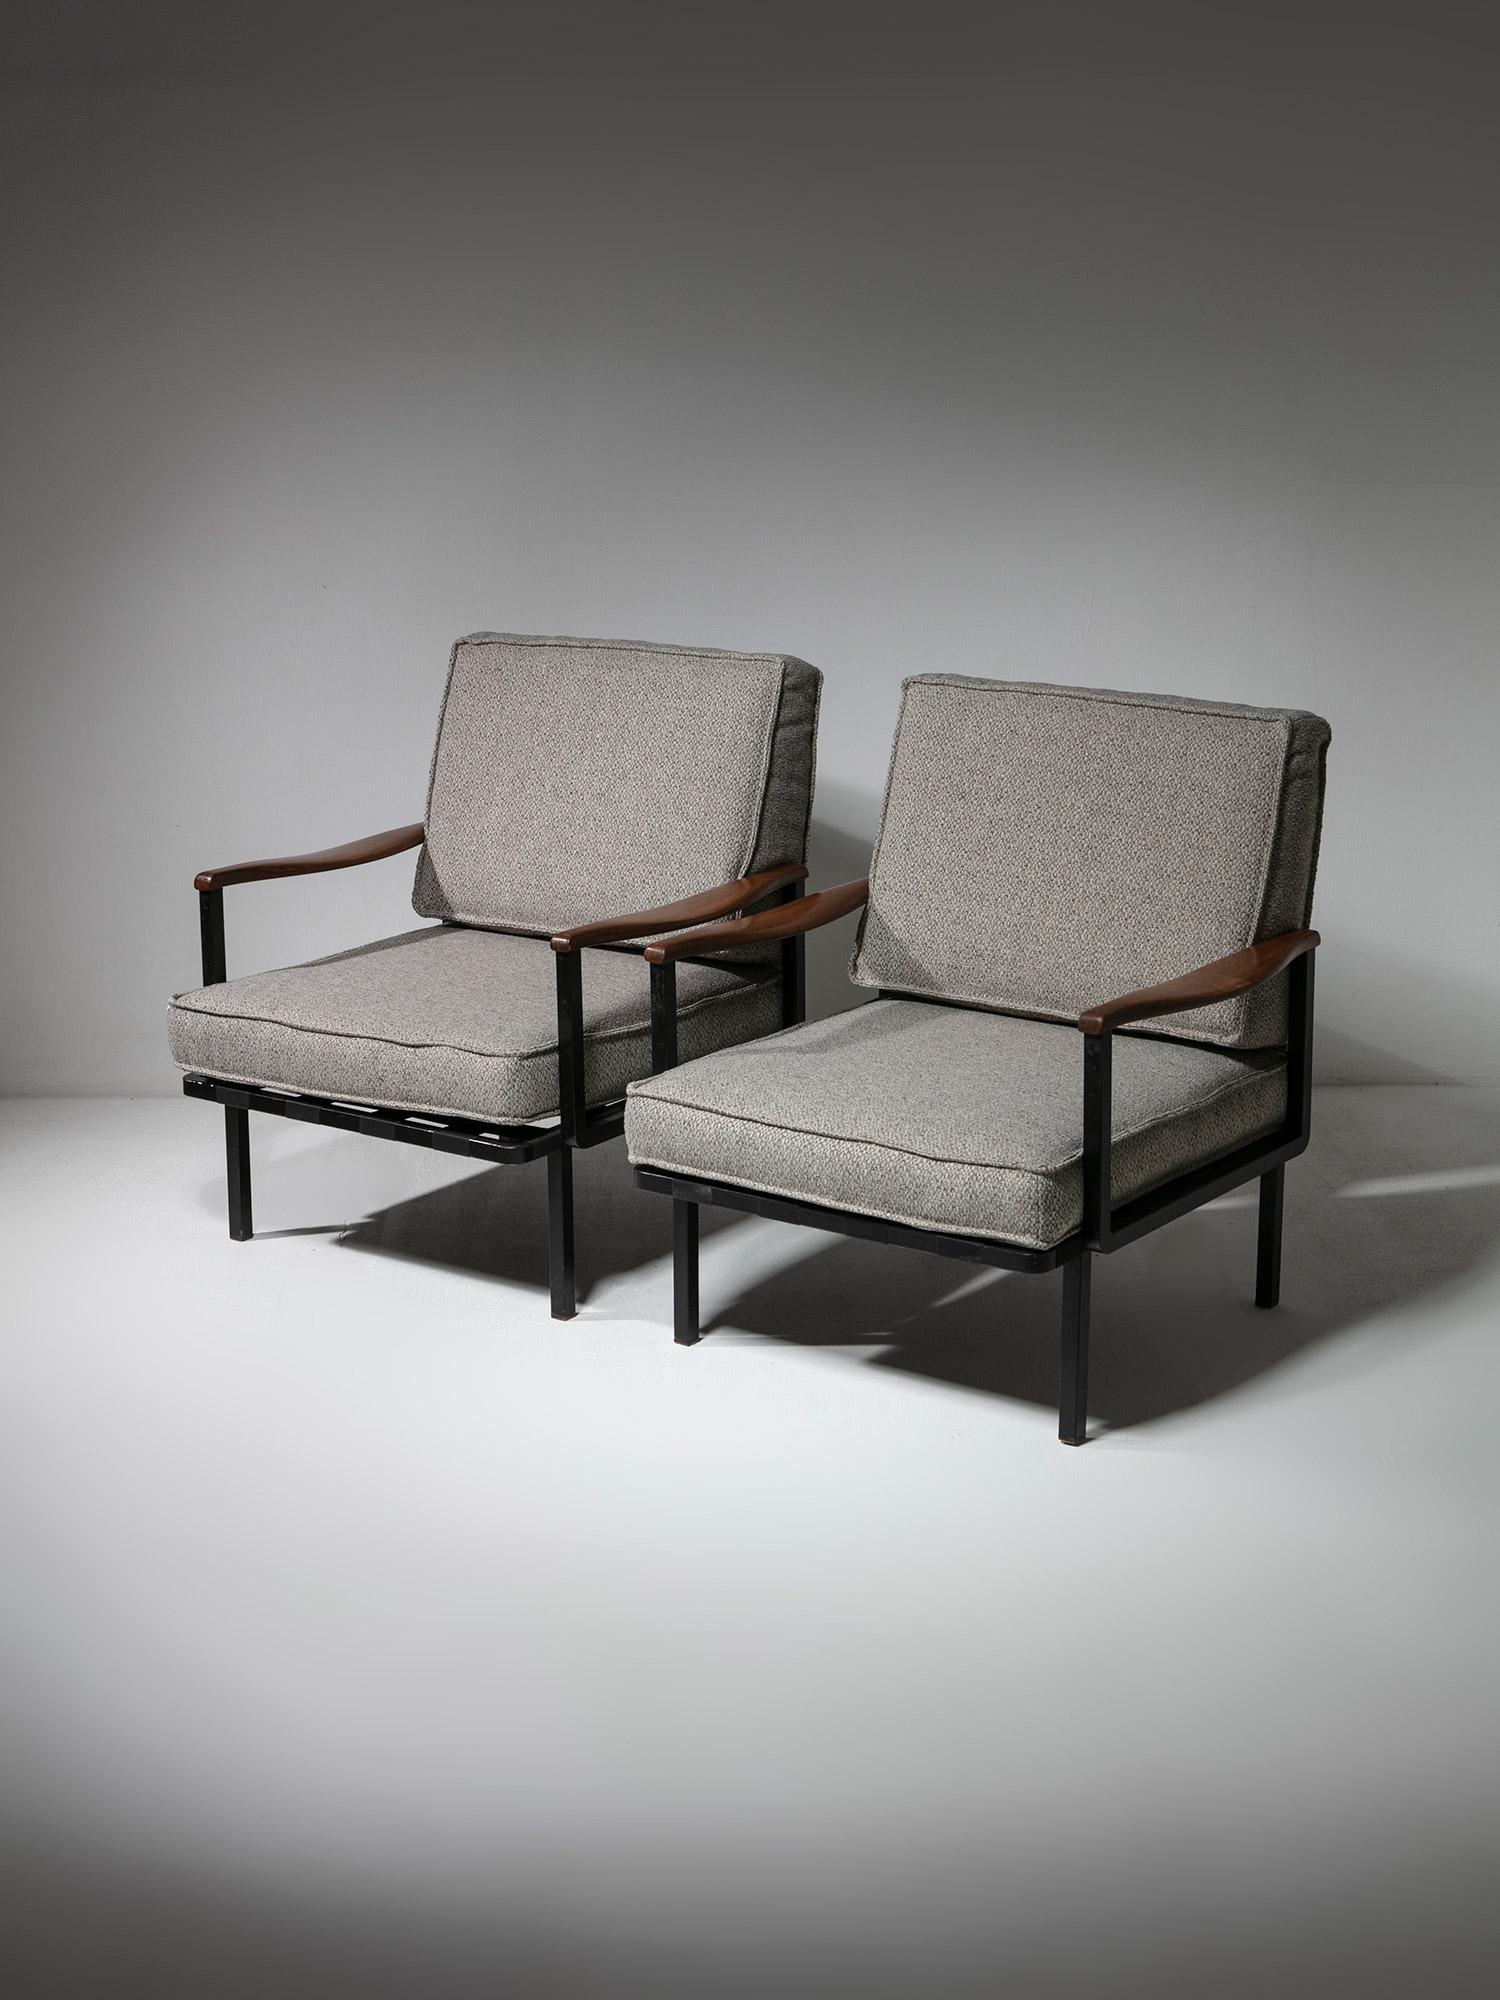 Loungesessel Modell P24 von Osvaldo Borsani für Tecno.
Überraschende Kombination aus eleganten Holzarmlehnen und Metallgestell.
Die Stühle können auch zu einer bequemen Sitzgruppe zusammengefügt werden.